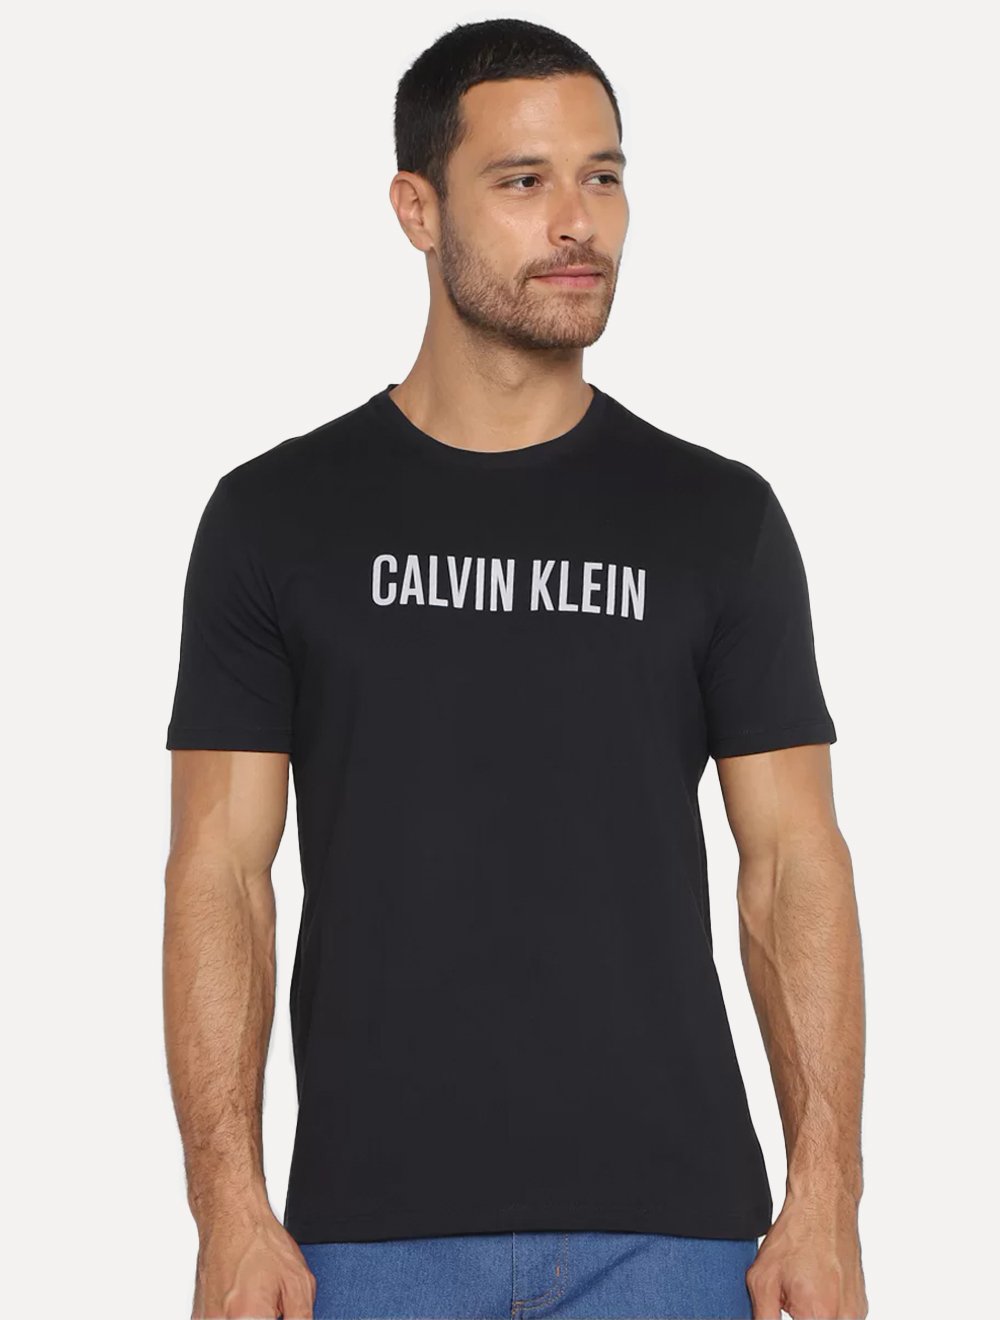 Camiseta Calvin Klein Masculina Meia Malha Intense Power Preta